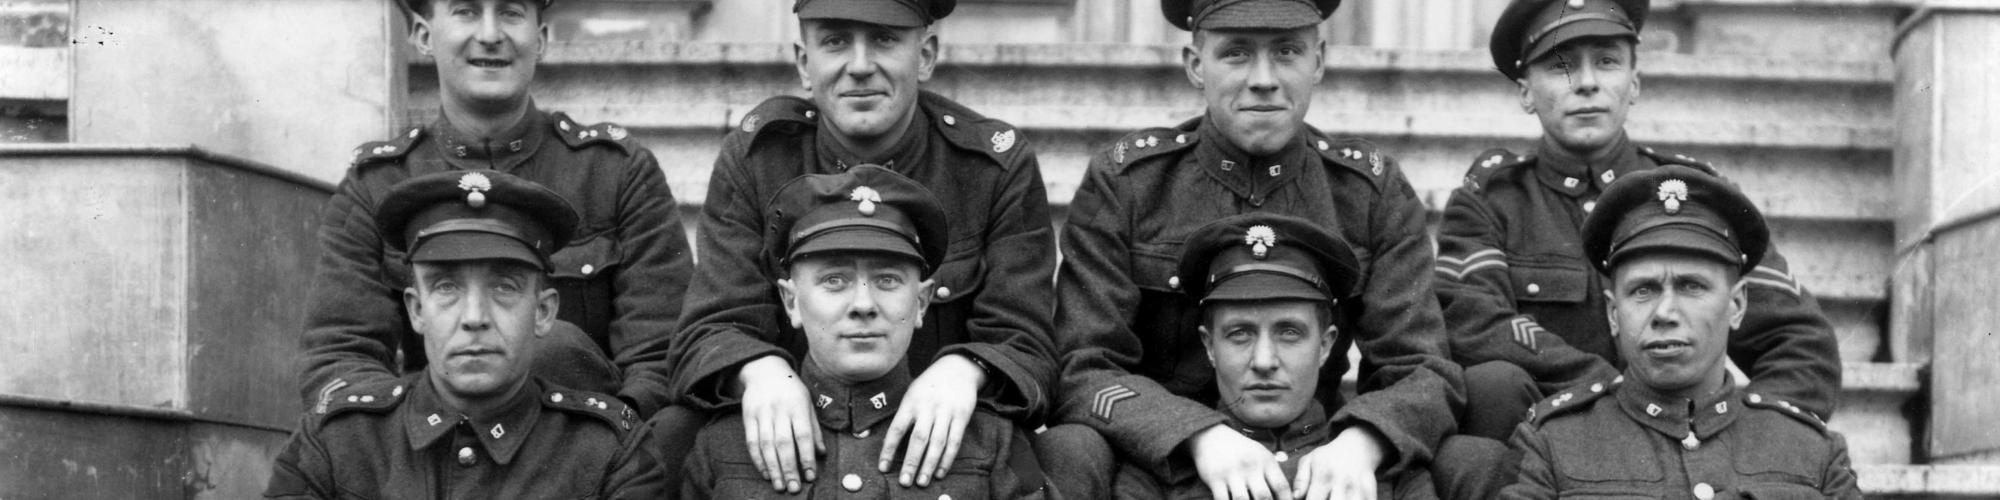 Soldaten Eerste wereld oorlog